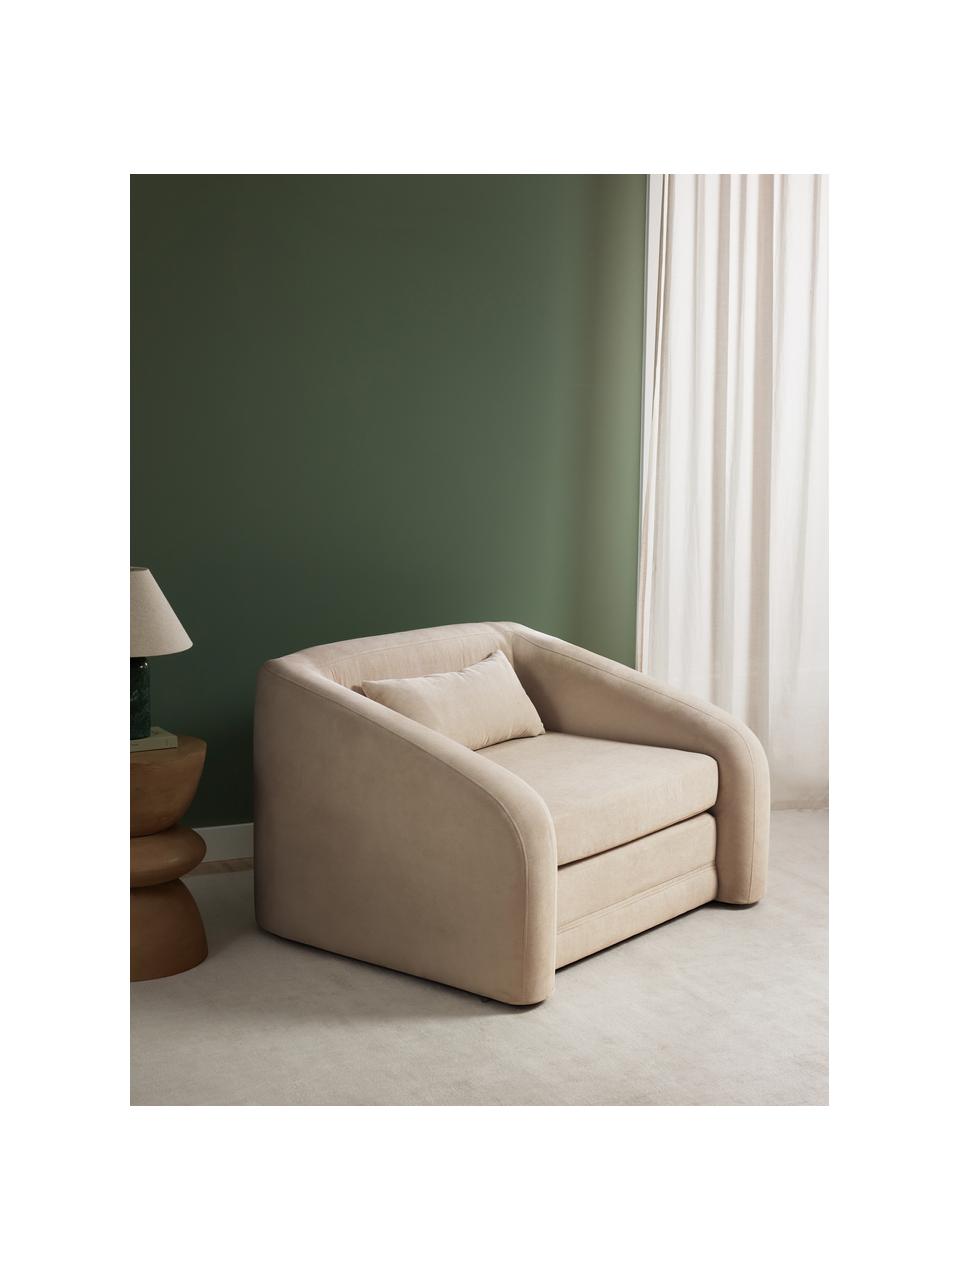 Fotel rozkładany Eliot, Tapicerka: 88% poliester, 12% nylon , Nogi: tworzywo sztuczne, Beżowa tkanina, S 100 x W 70 cm